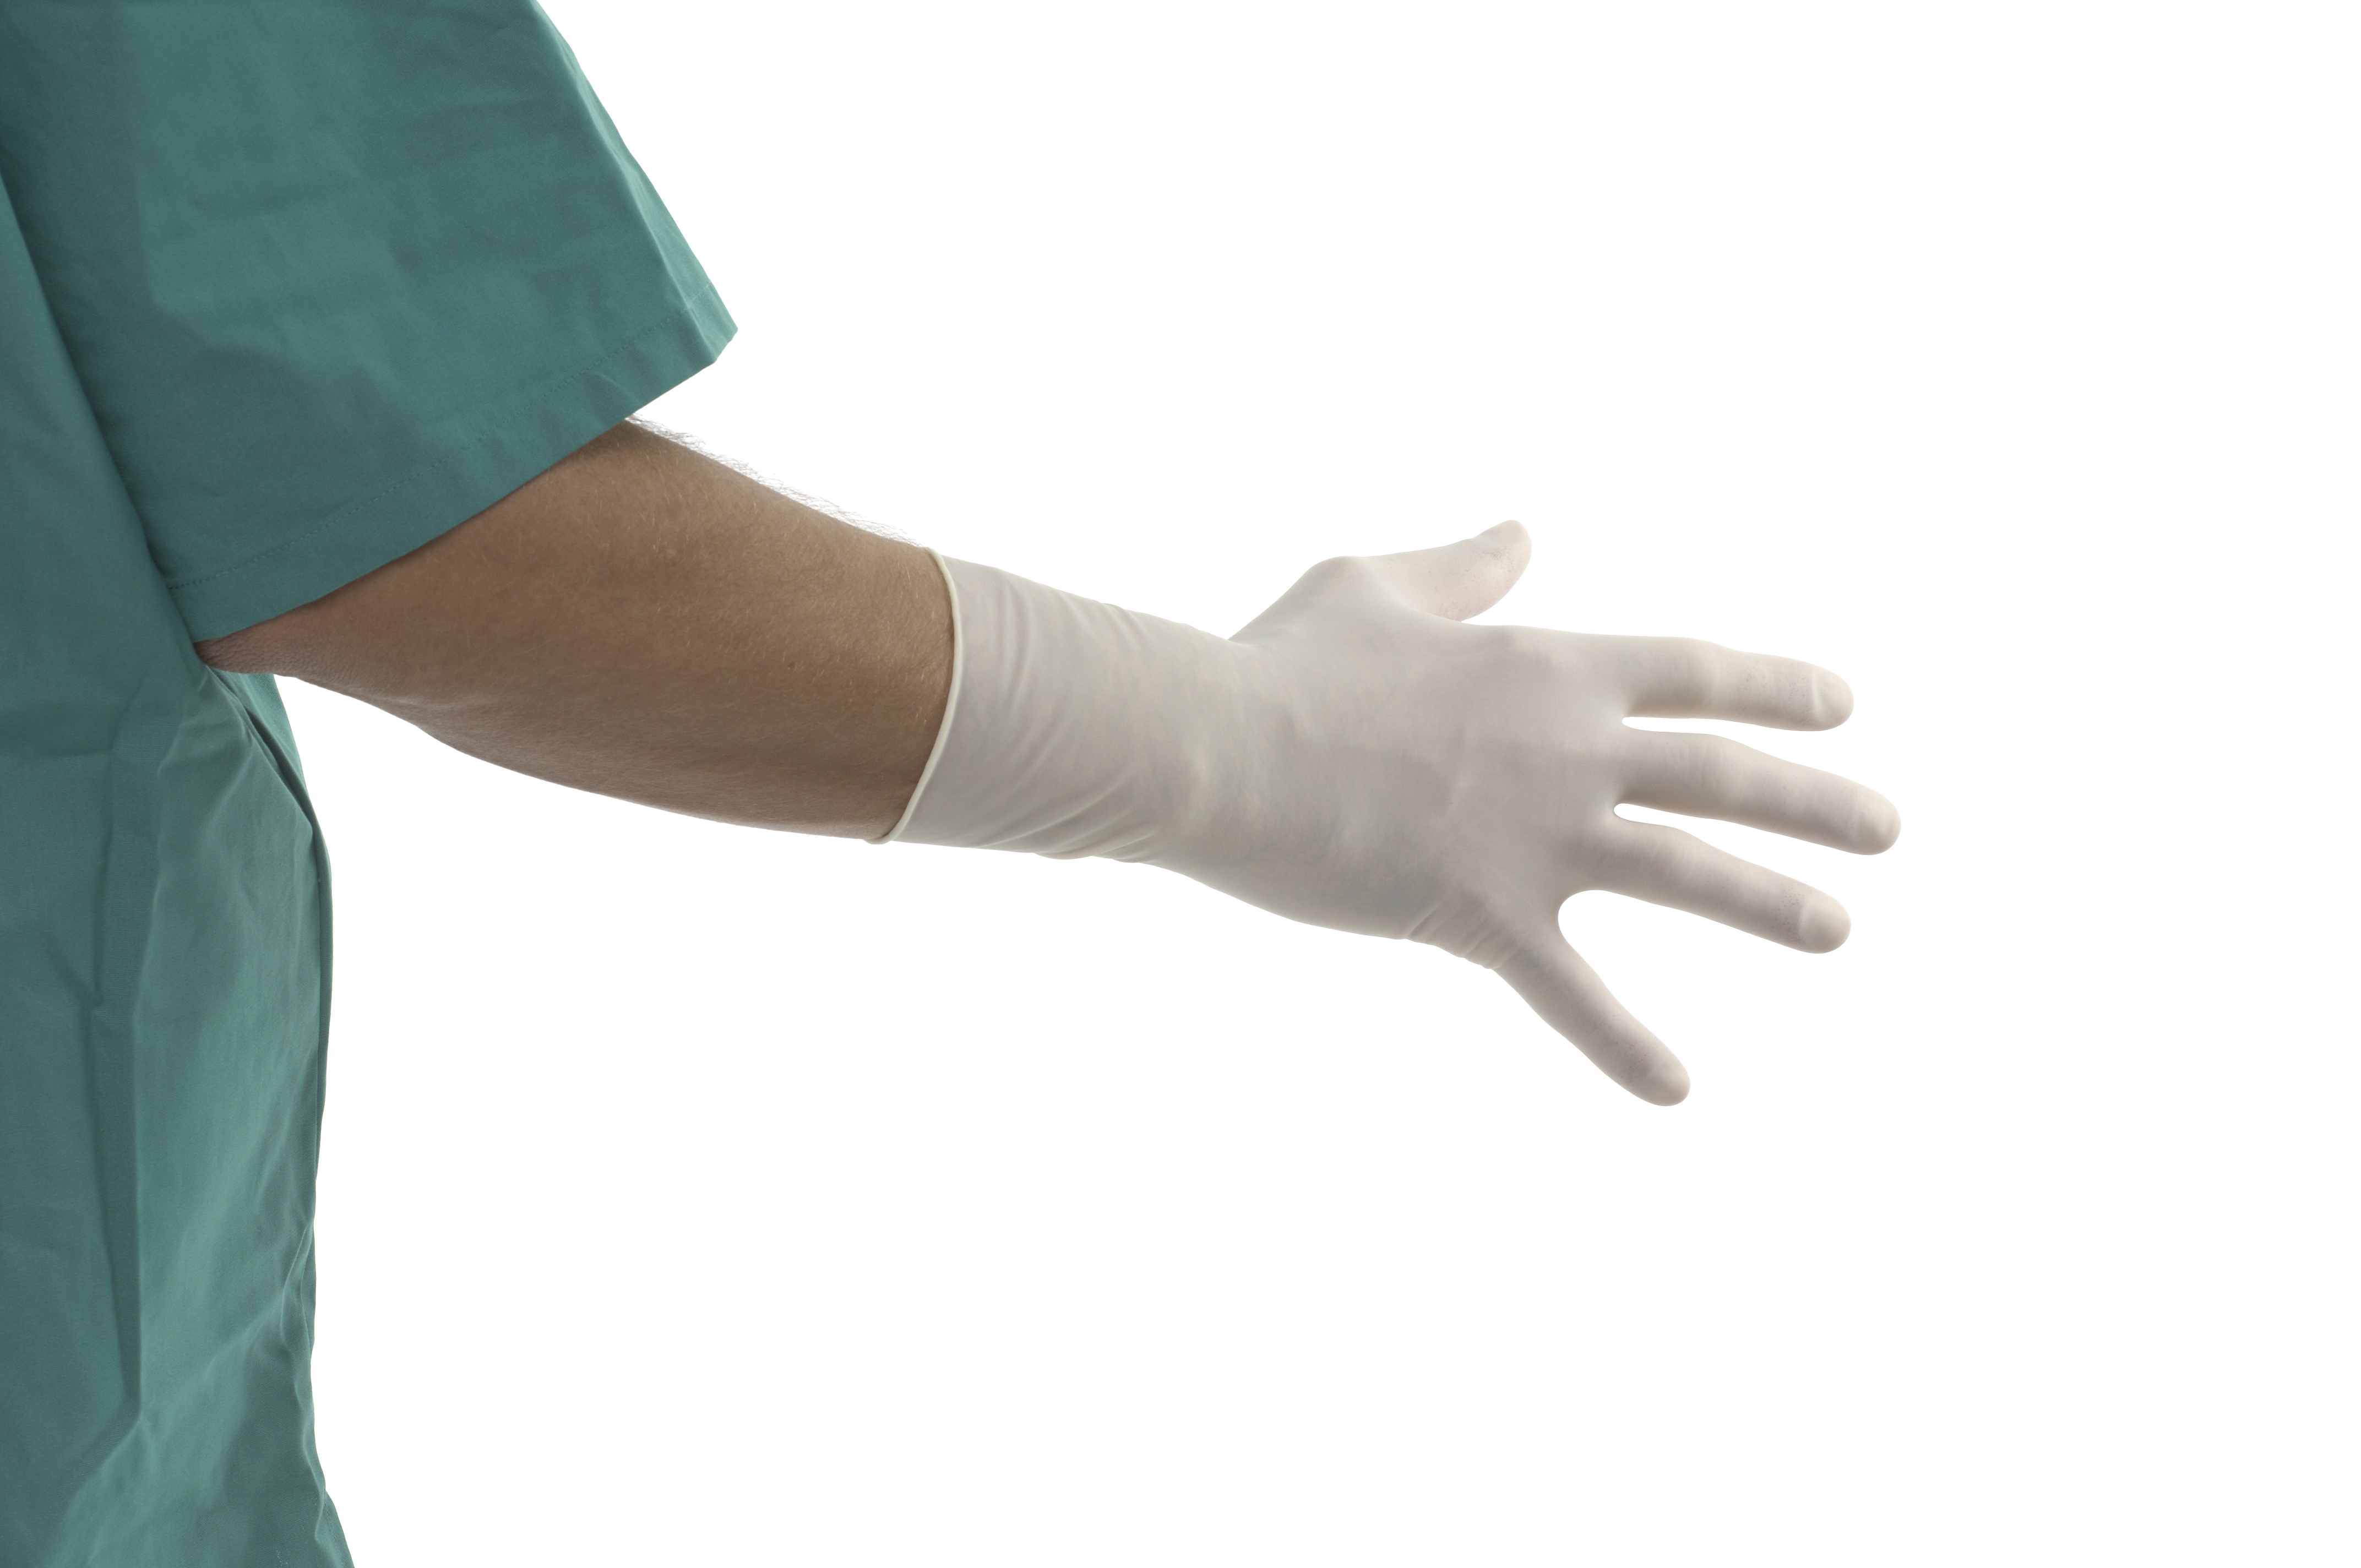 US-KRUTEX Polyisoprene surgical gloves, size 5.5, 25/pk